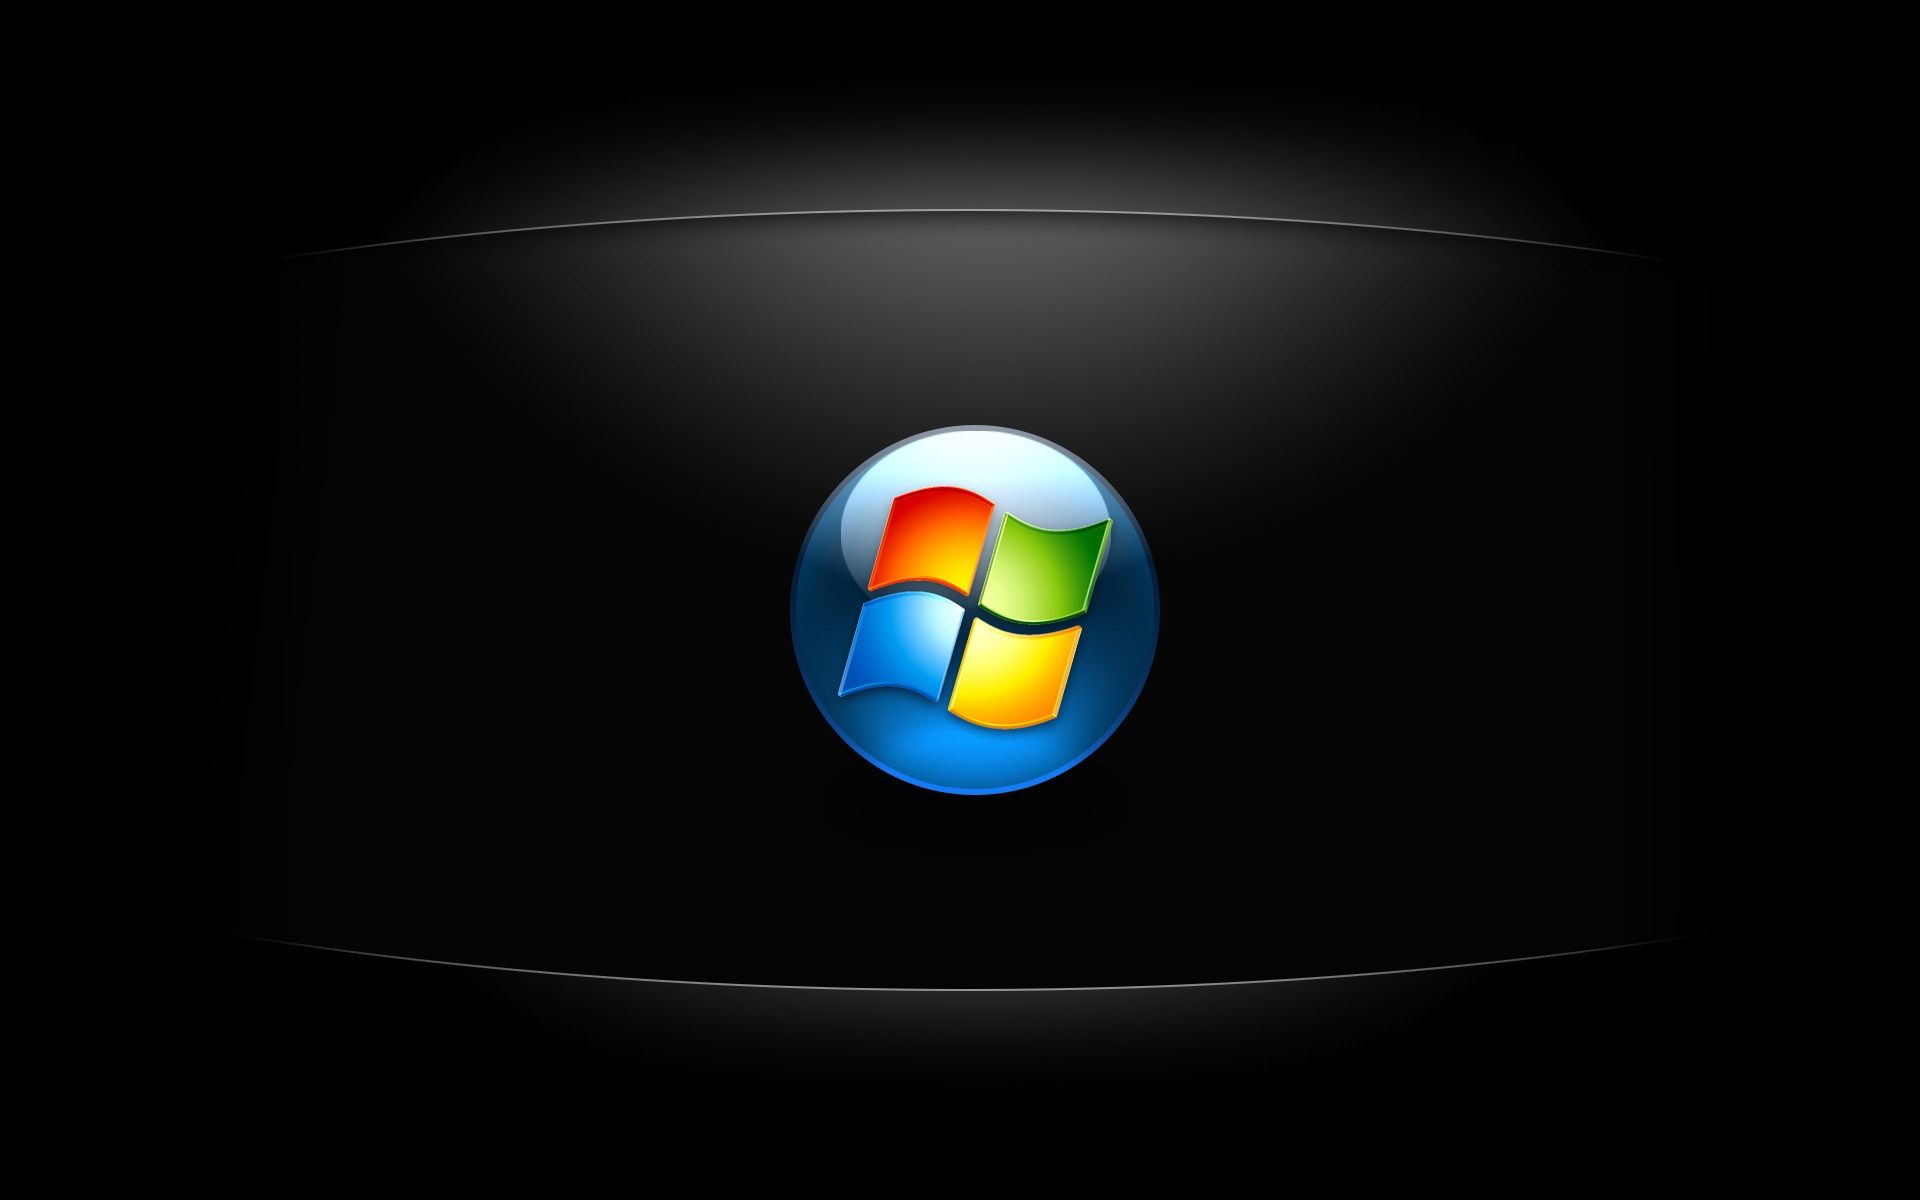 fondos de escritorio hd para windows 7,sistema operativo,fuente,gráficos,tecnología,emblema